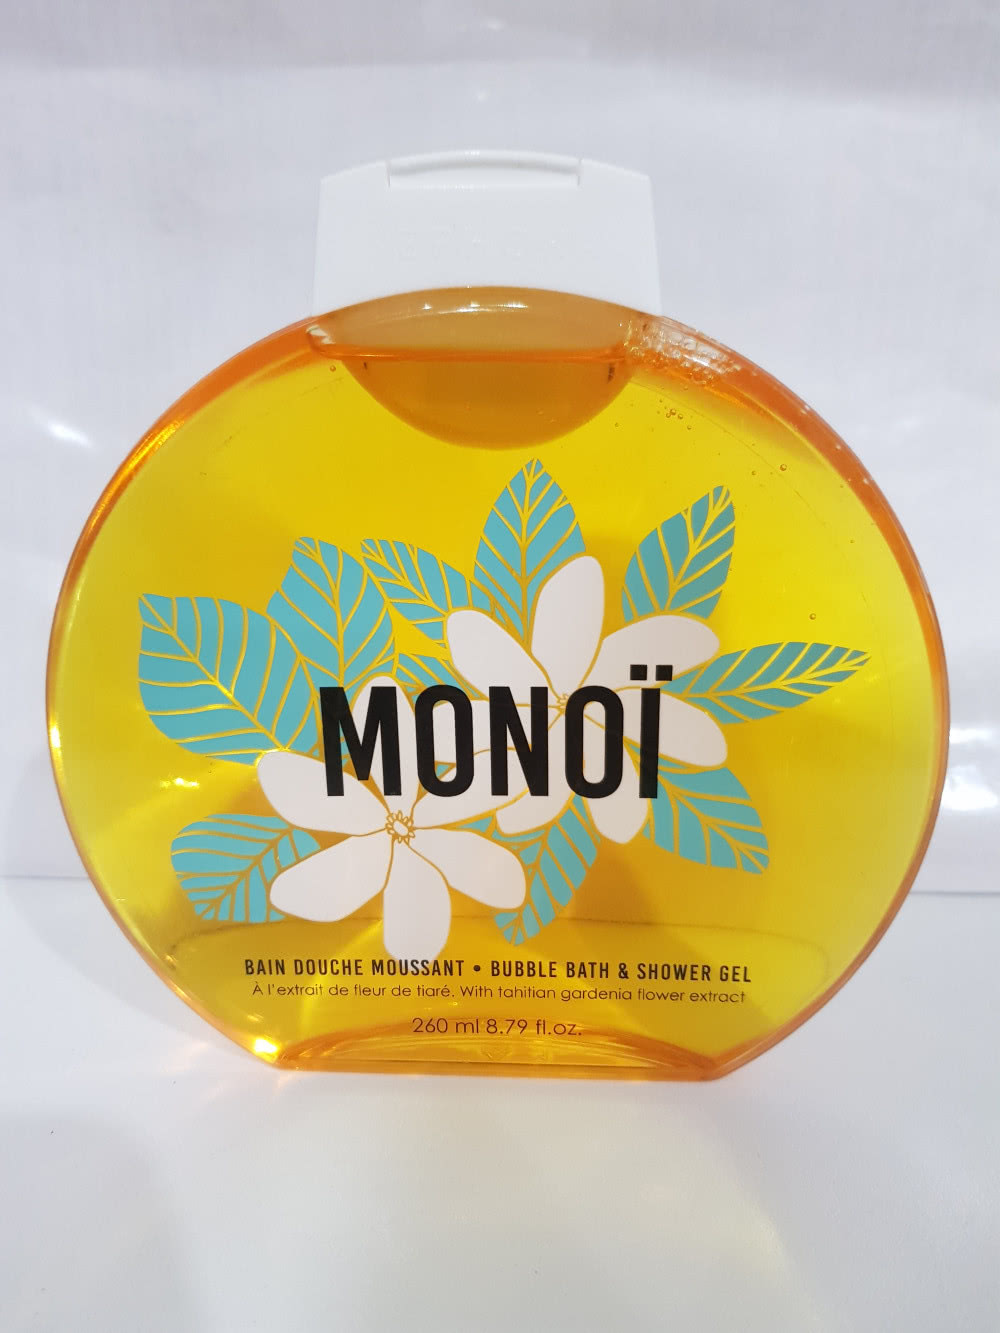 Sephora Monoi гель - пена для ванны и душа